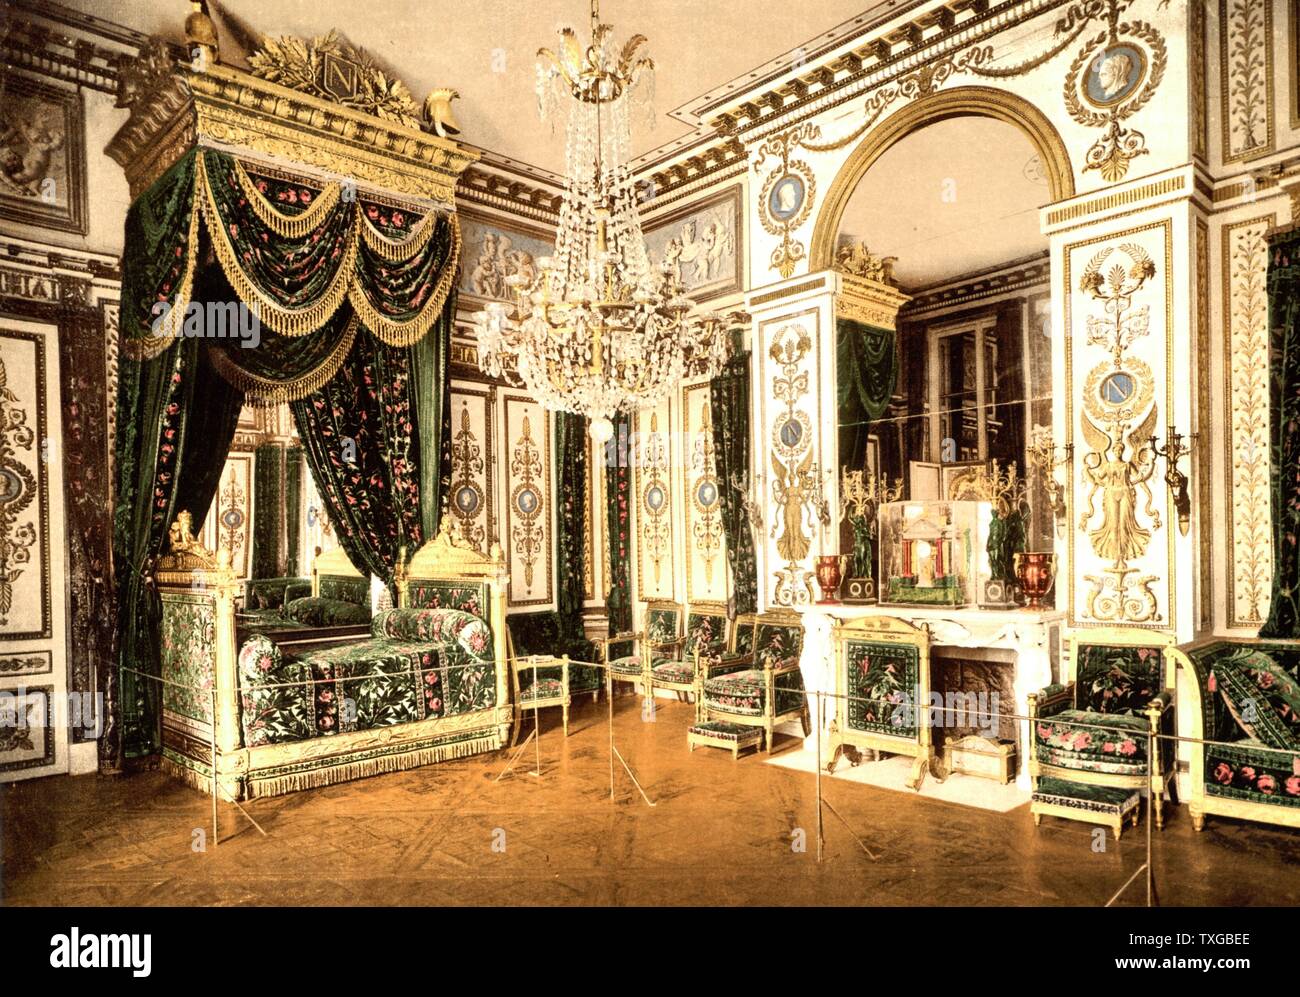 Schlafzimmer von Napoleon i., Kaiser von Frankreich Fontainebleau Palast, Frankreich 1900 Stockfoto